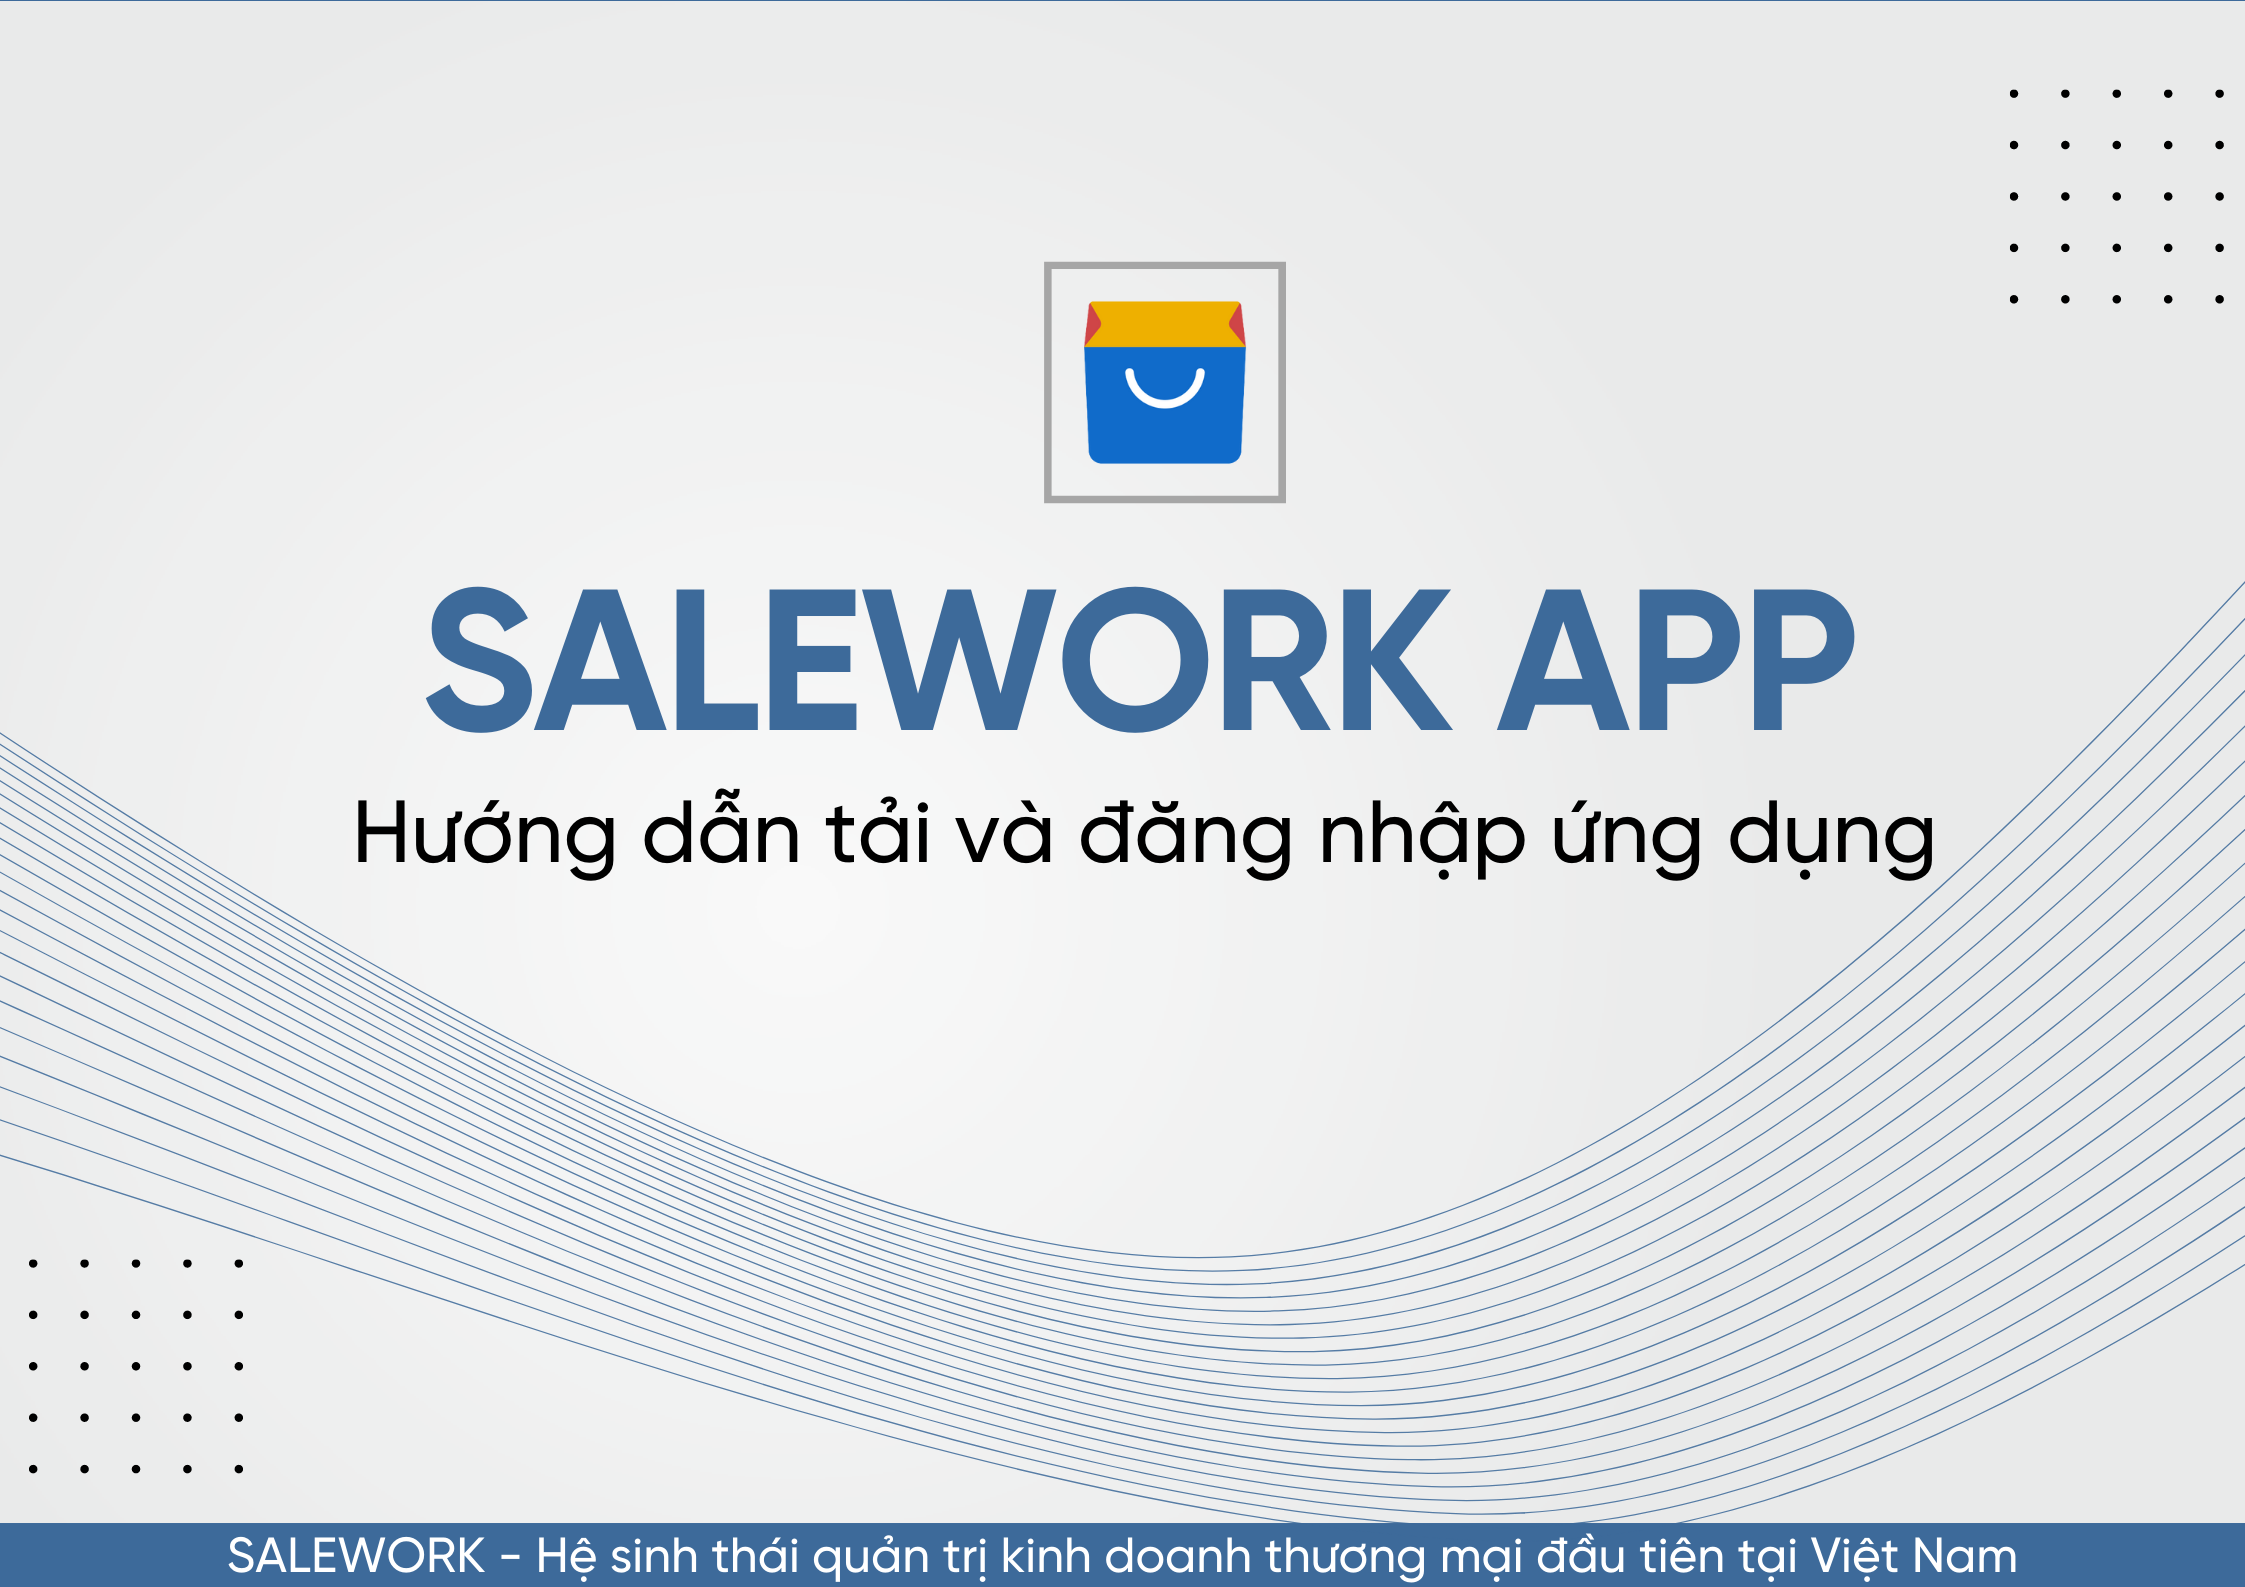 Hướng dẫn tải và đăng nhập ứng dụng Salework trên nền tảng di động - 95